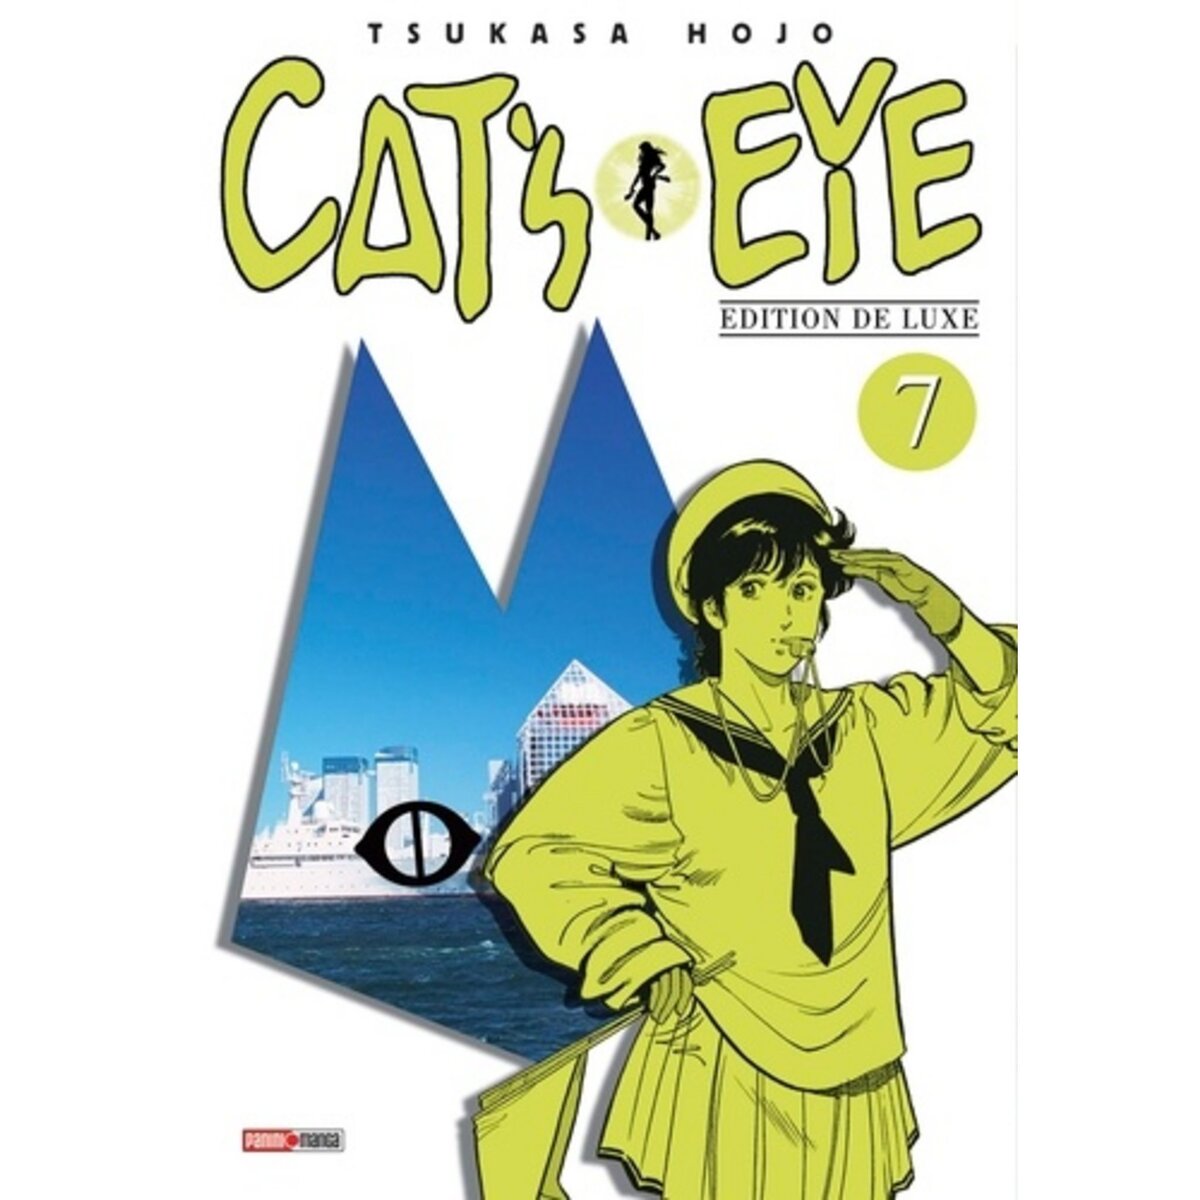  CAT'S EYE TOME 7 . EDITION DE LUXE, Hojo Tsukasa